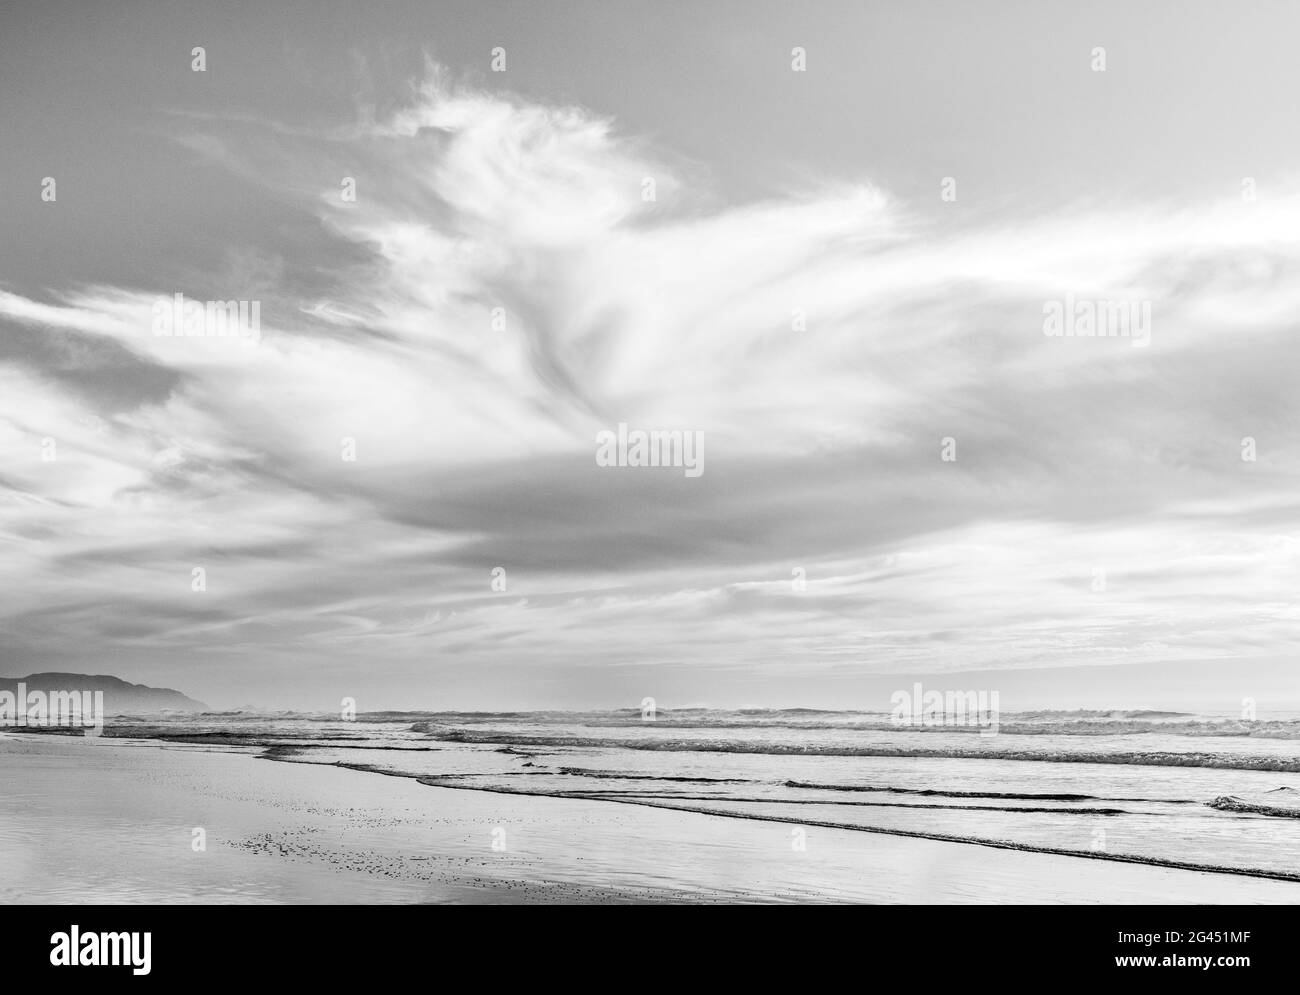 Landschaft mit Strand, Pazifik und Wolken in Schwarz und Weiß Stockfoto